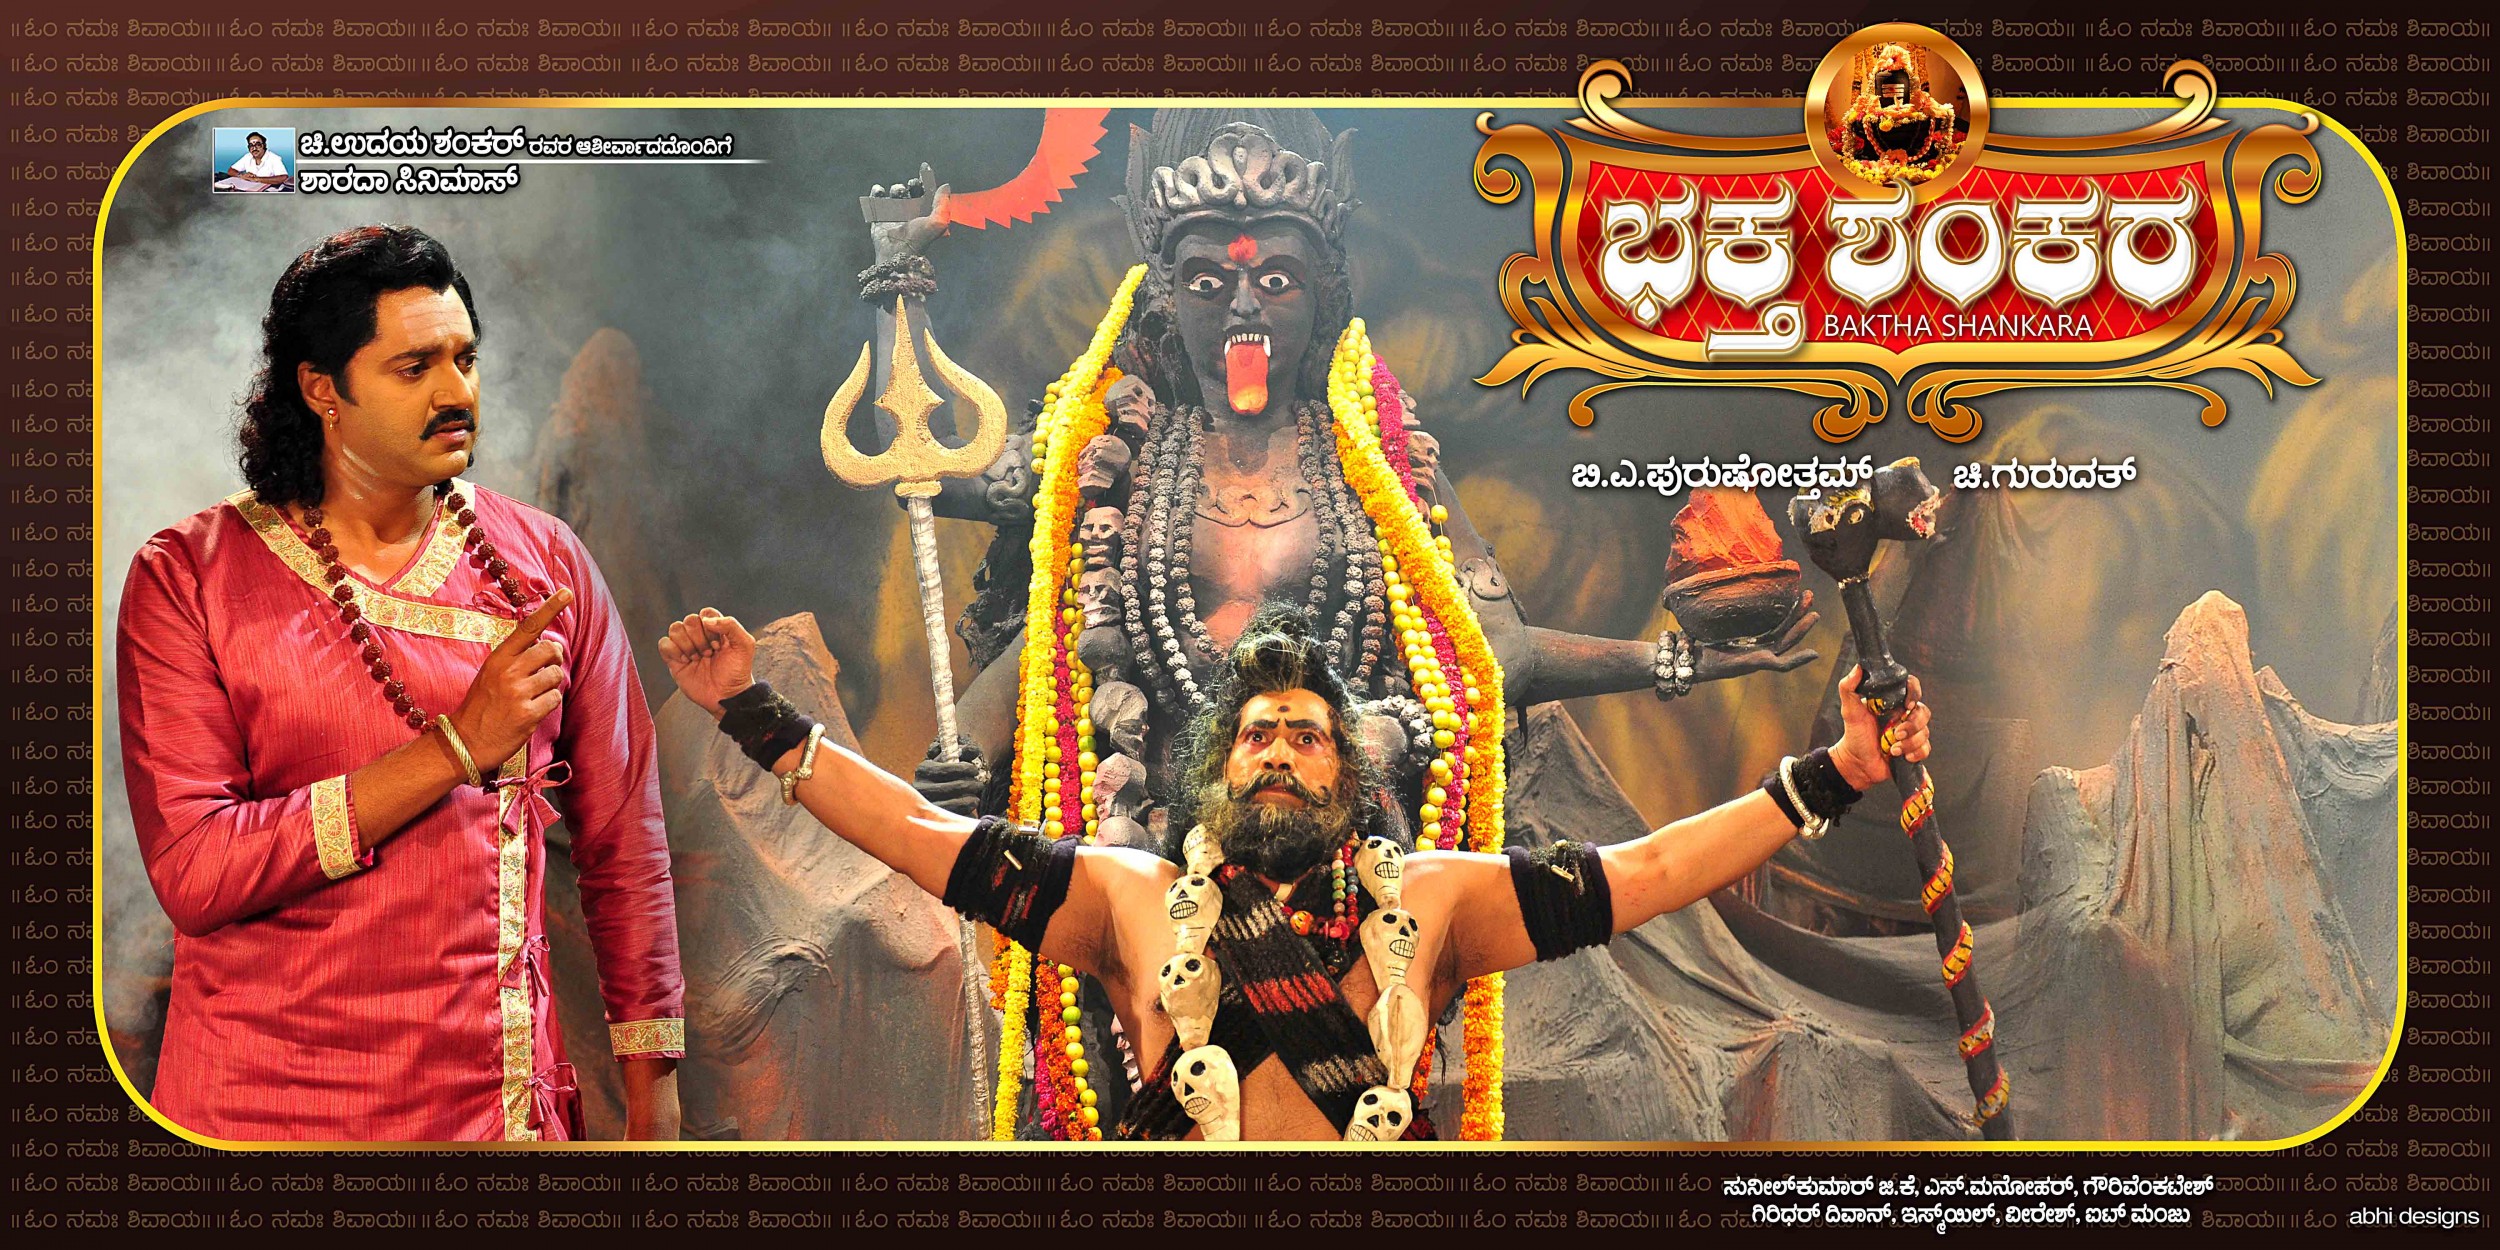 Mega Sized Movie Poster Image for Baktha Shankara (#6 of 10)